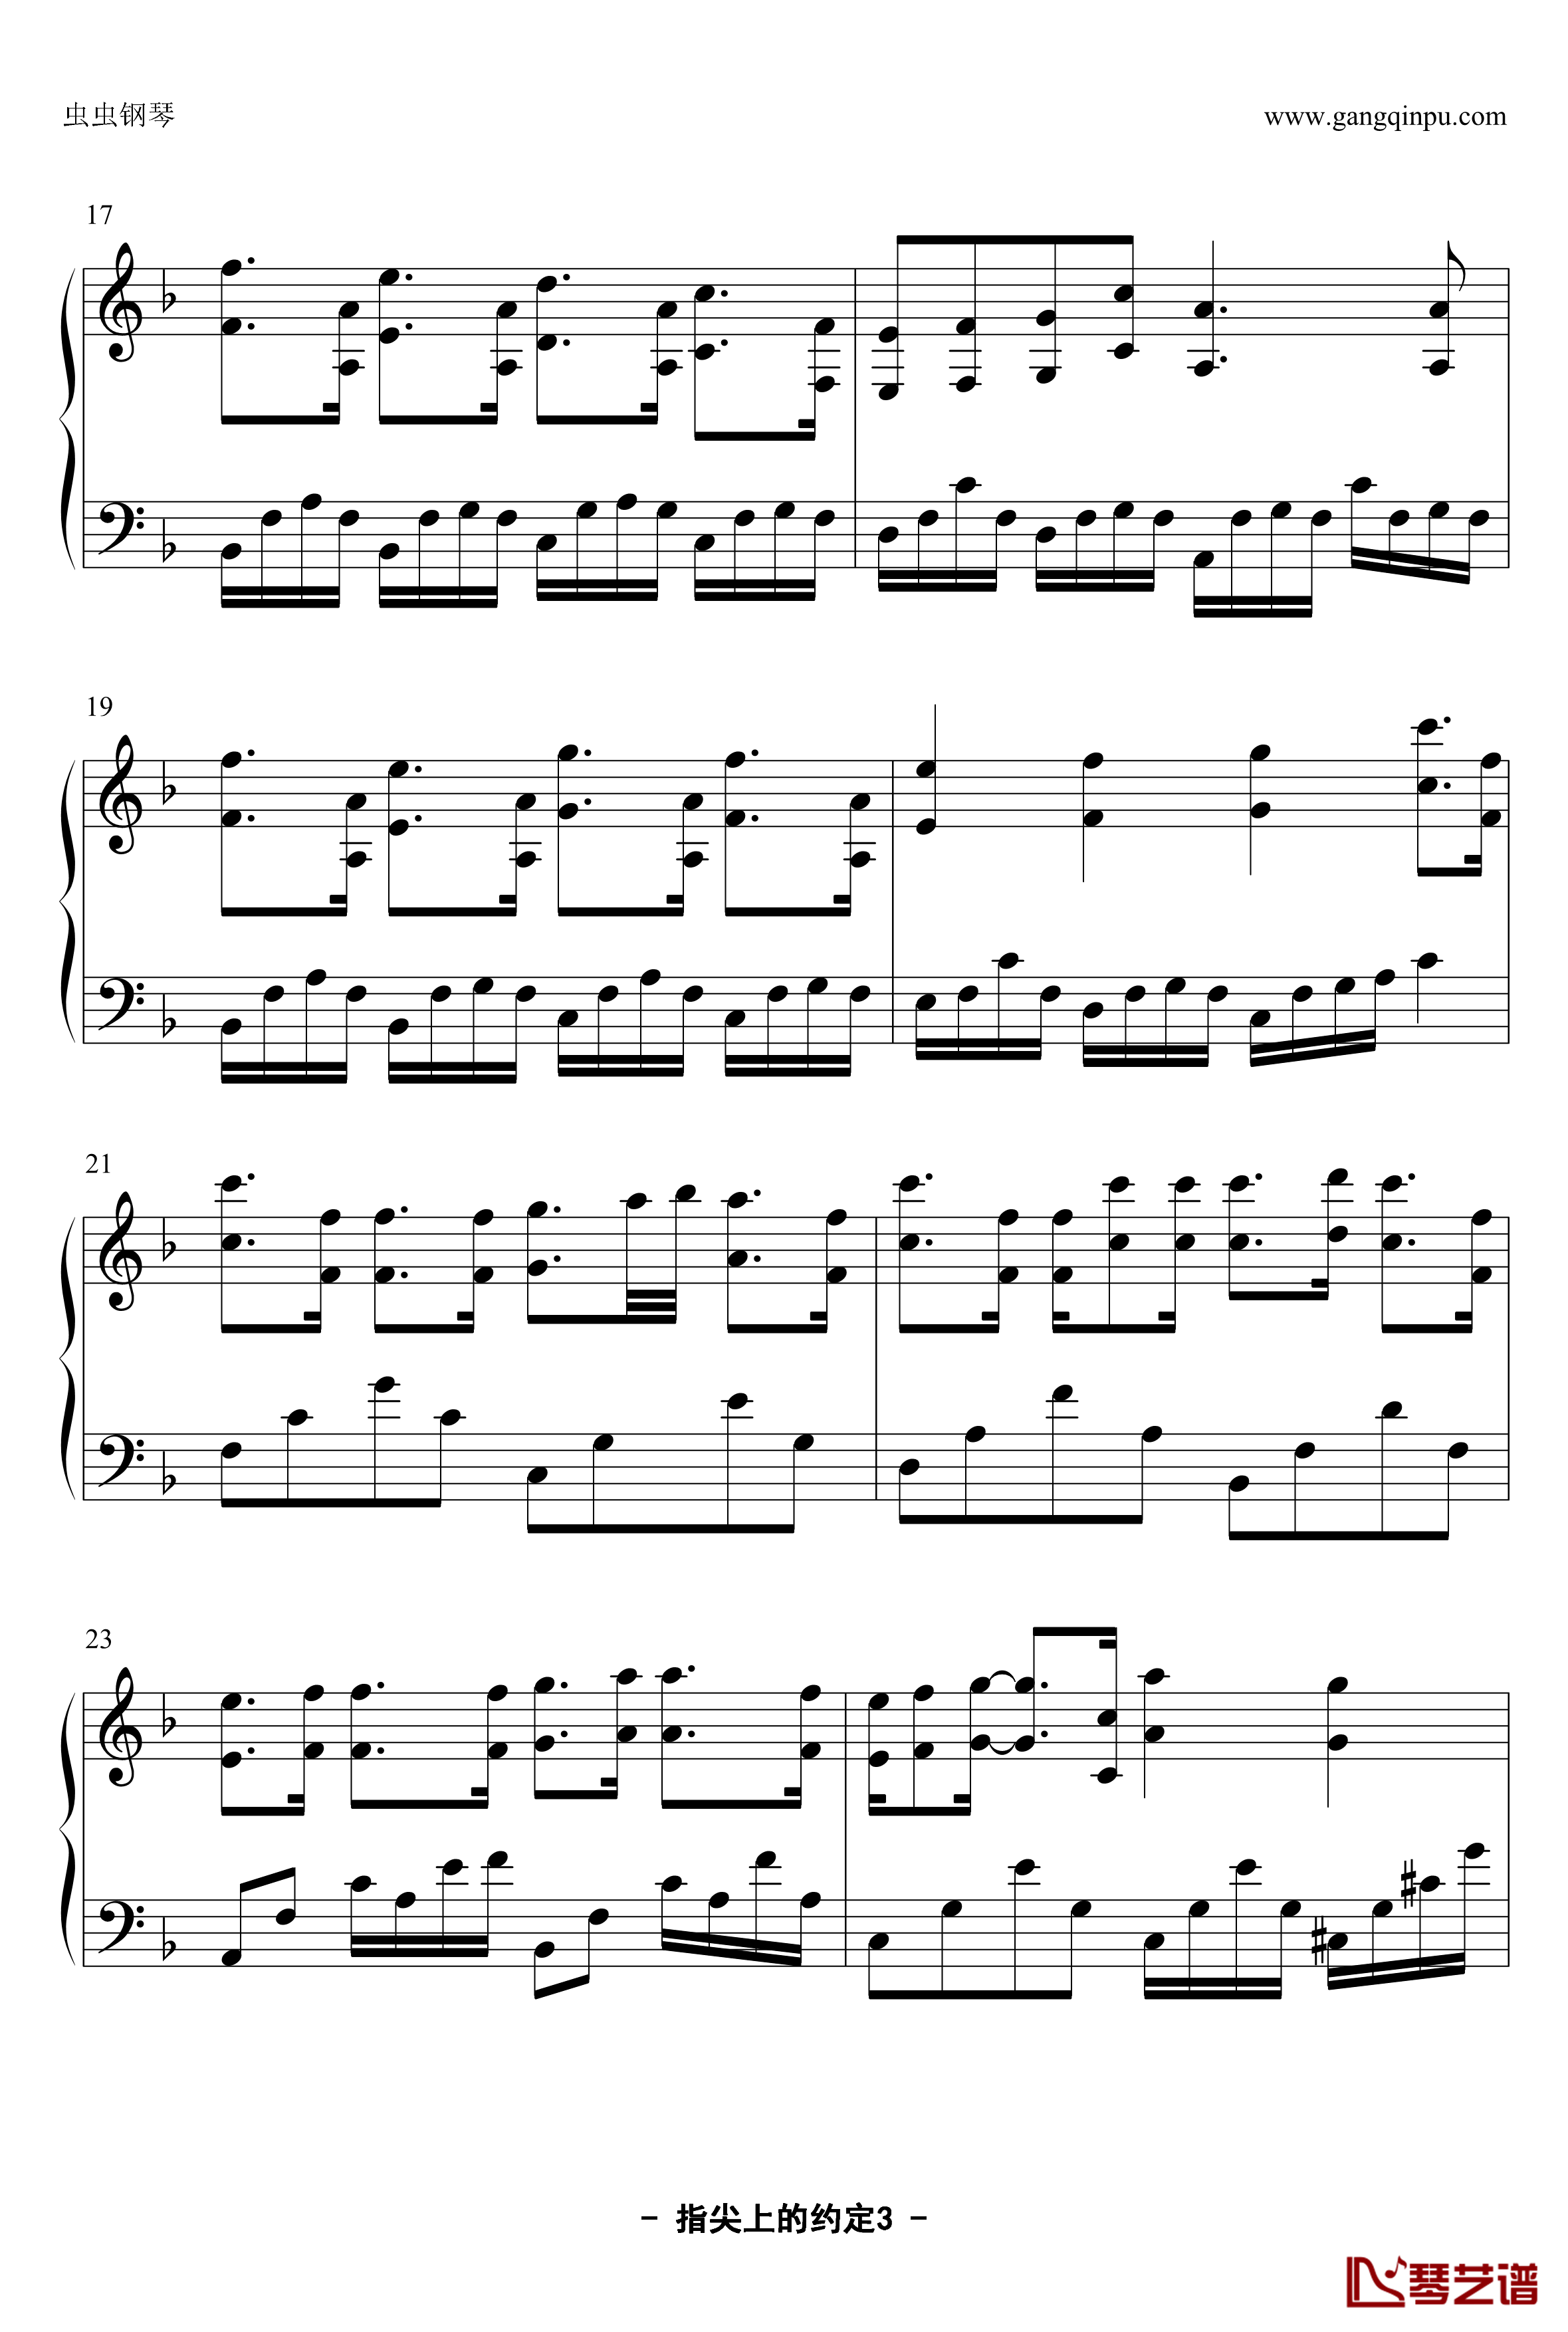 指尖上的约定钢琴谱-YUBIKIRI-GENMAN-Mili3